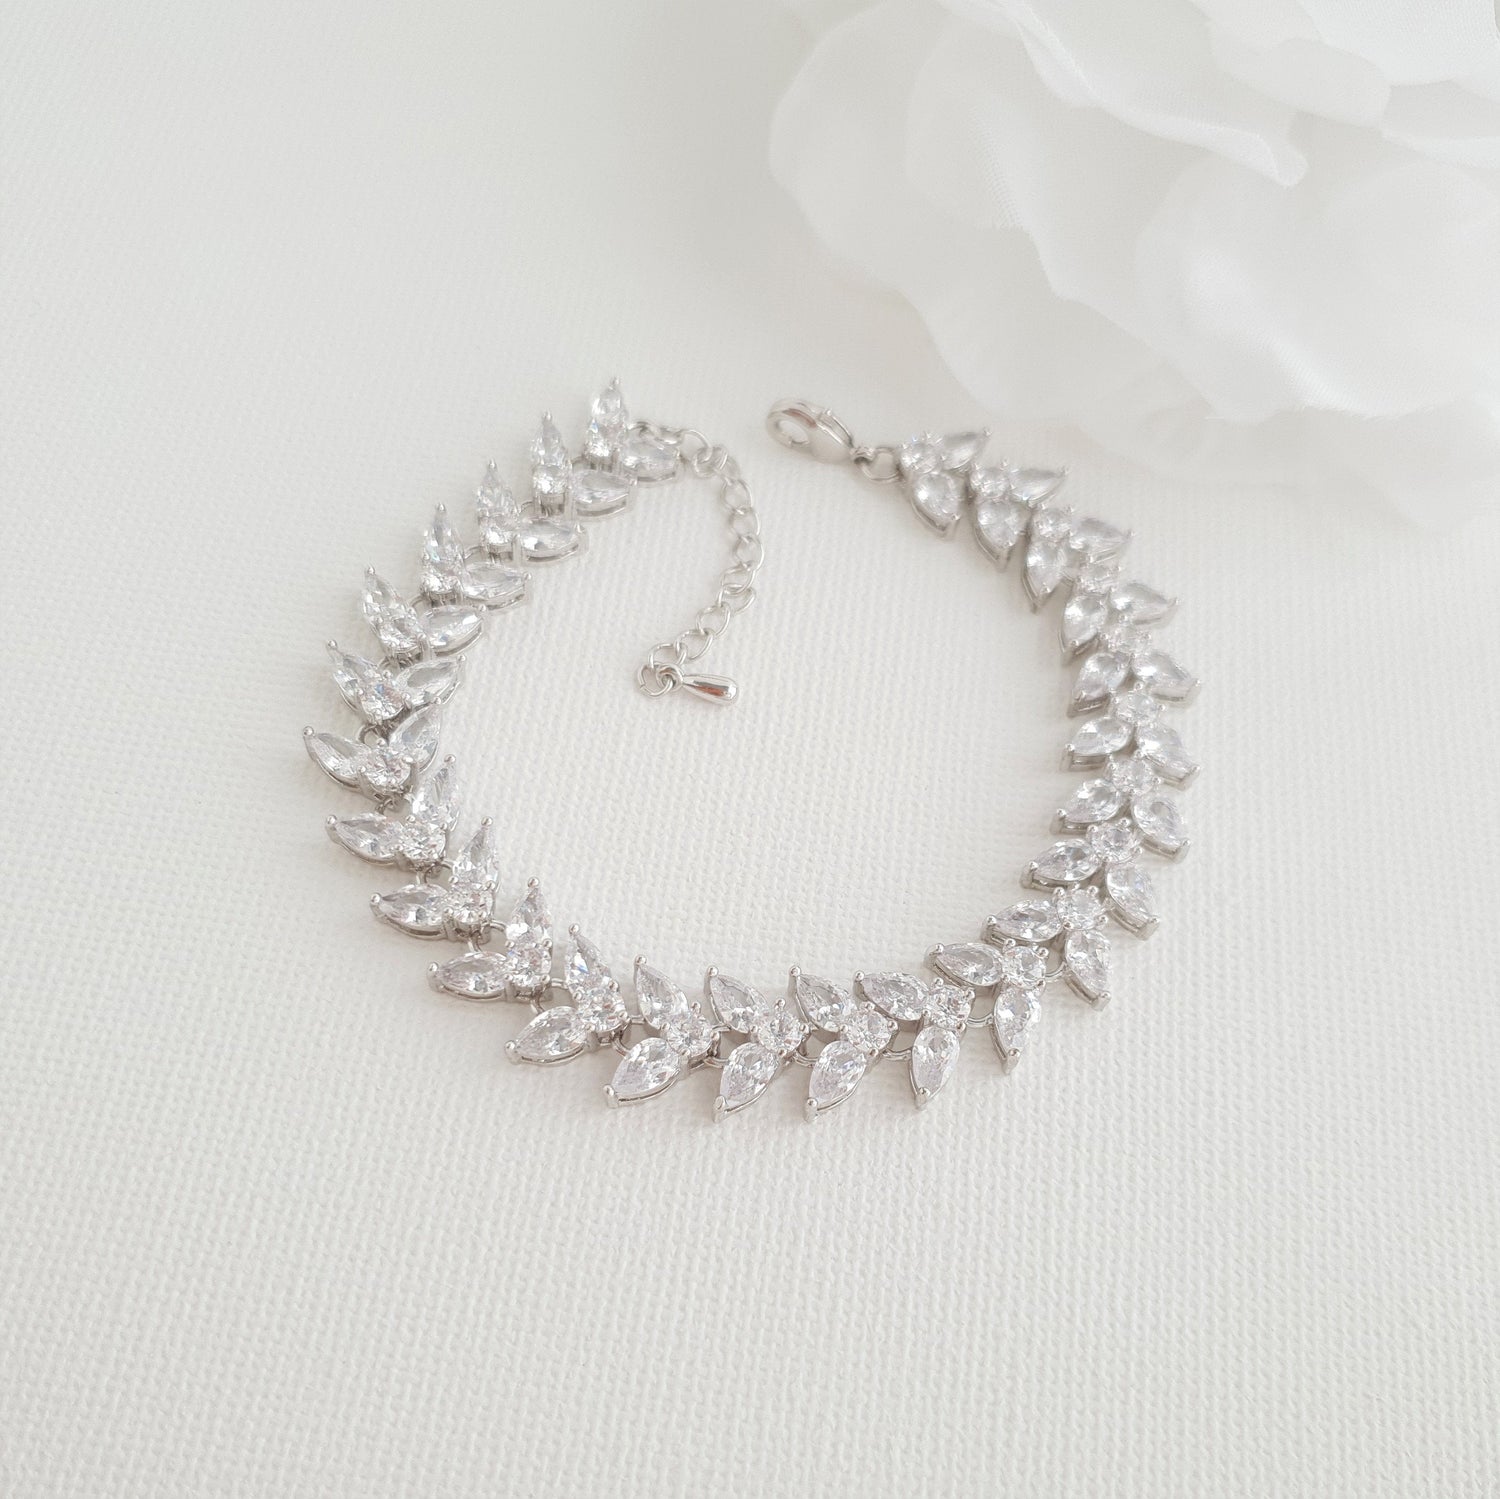 Shop Cubic Zirconia Wedding Flower Bracelet for Brides, Formal